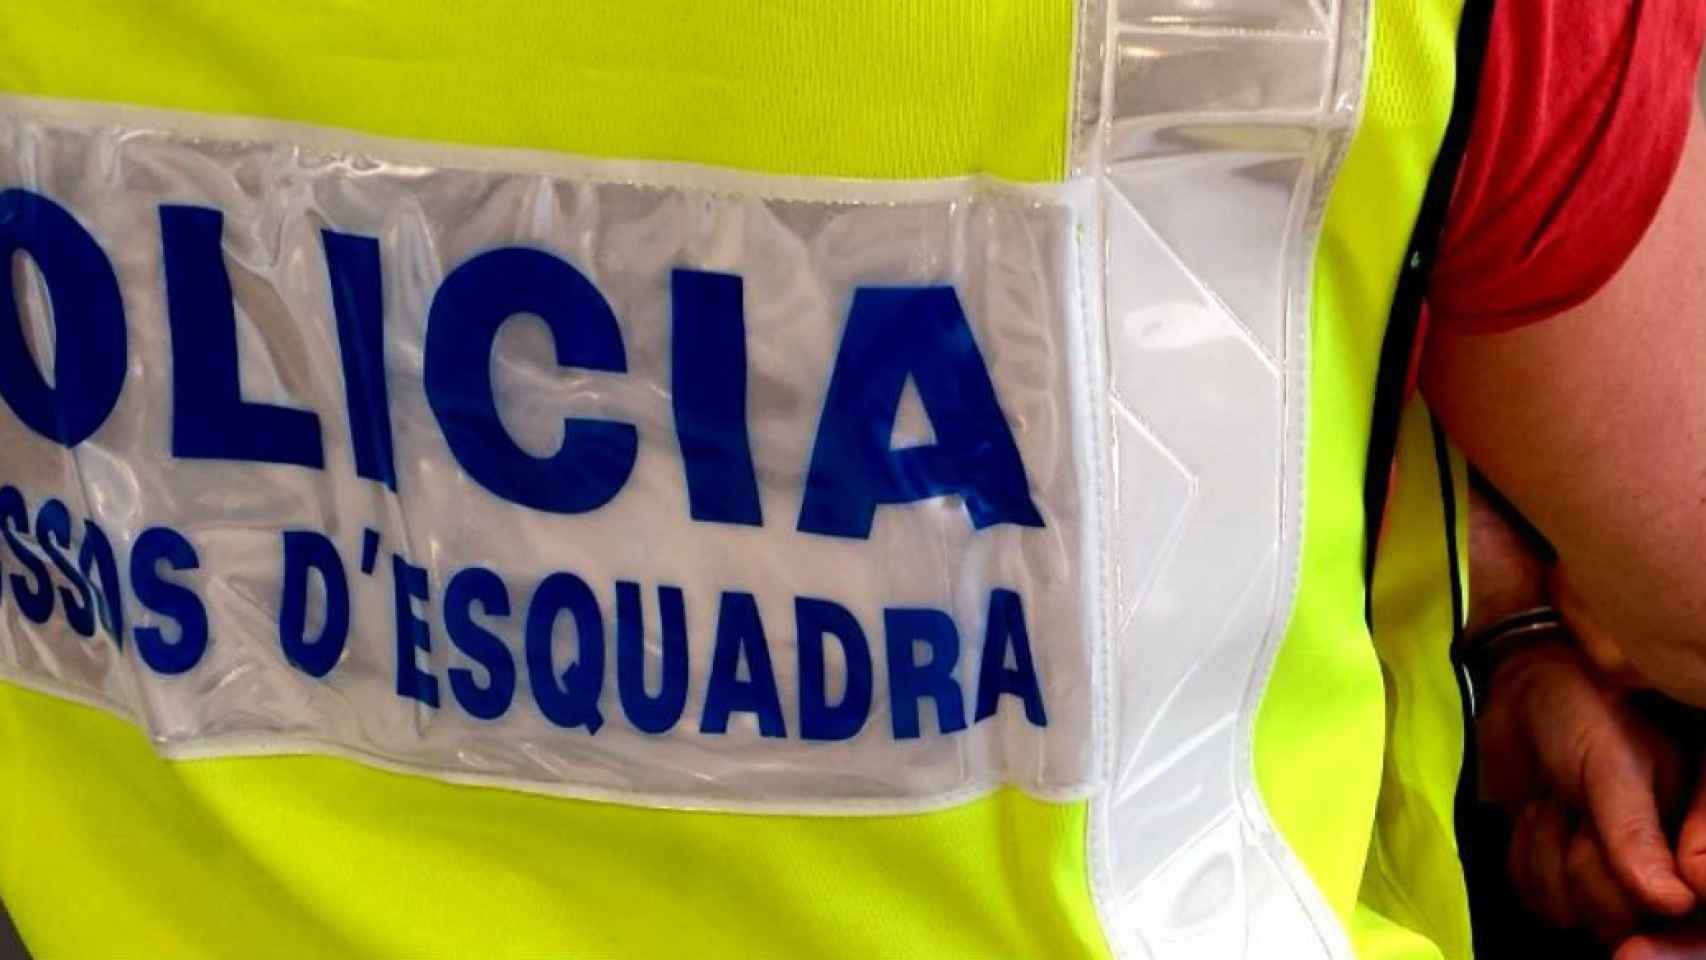 Los mossos buscan a dos atracadores reincidentes / @mossos